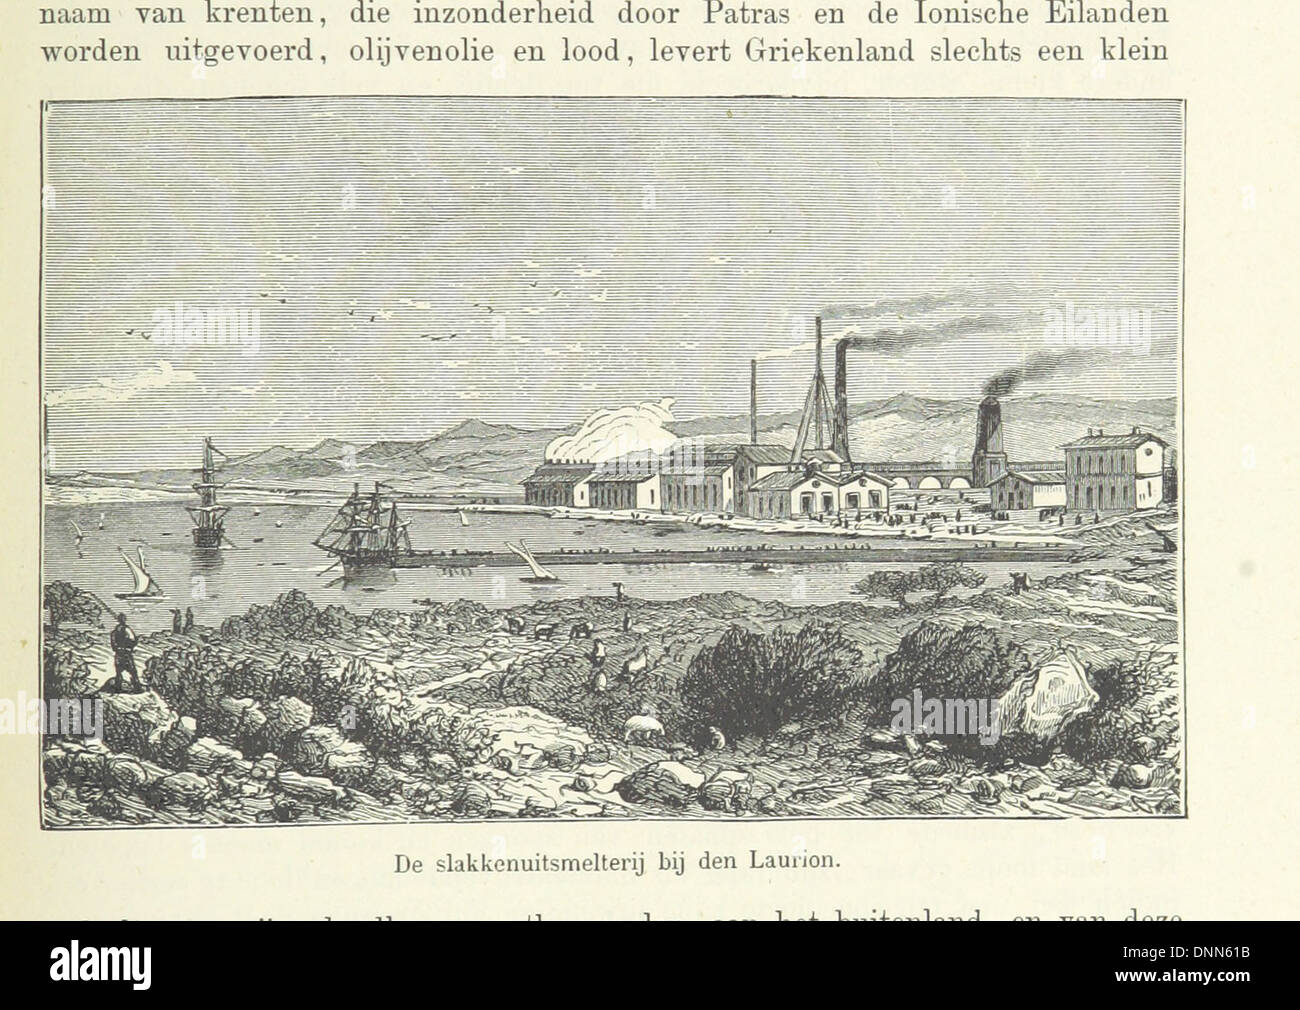 Image taken from page 139 of 'Geïllustreerde Aardrijksbeschrijving' Stock Photo